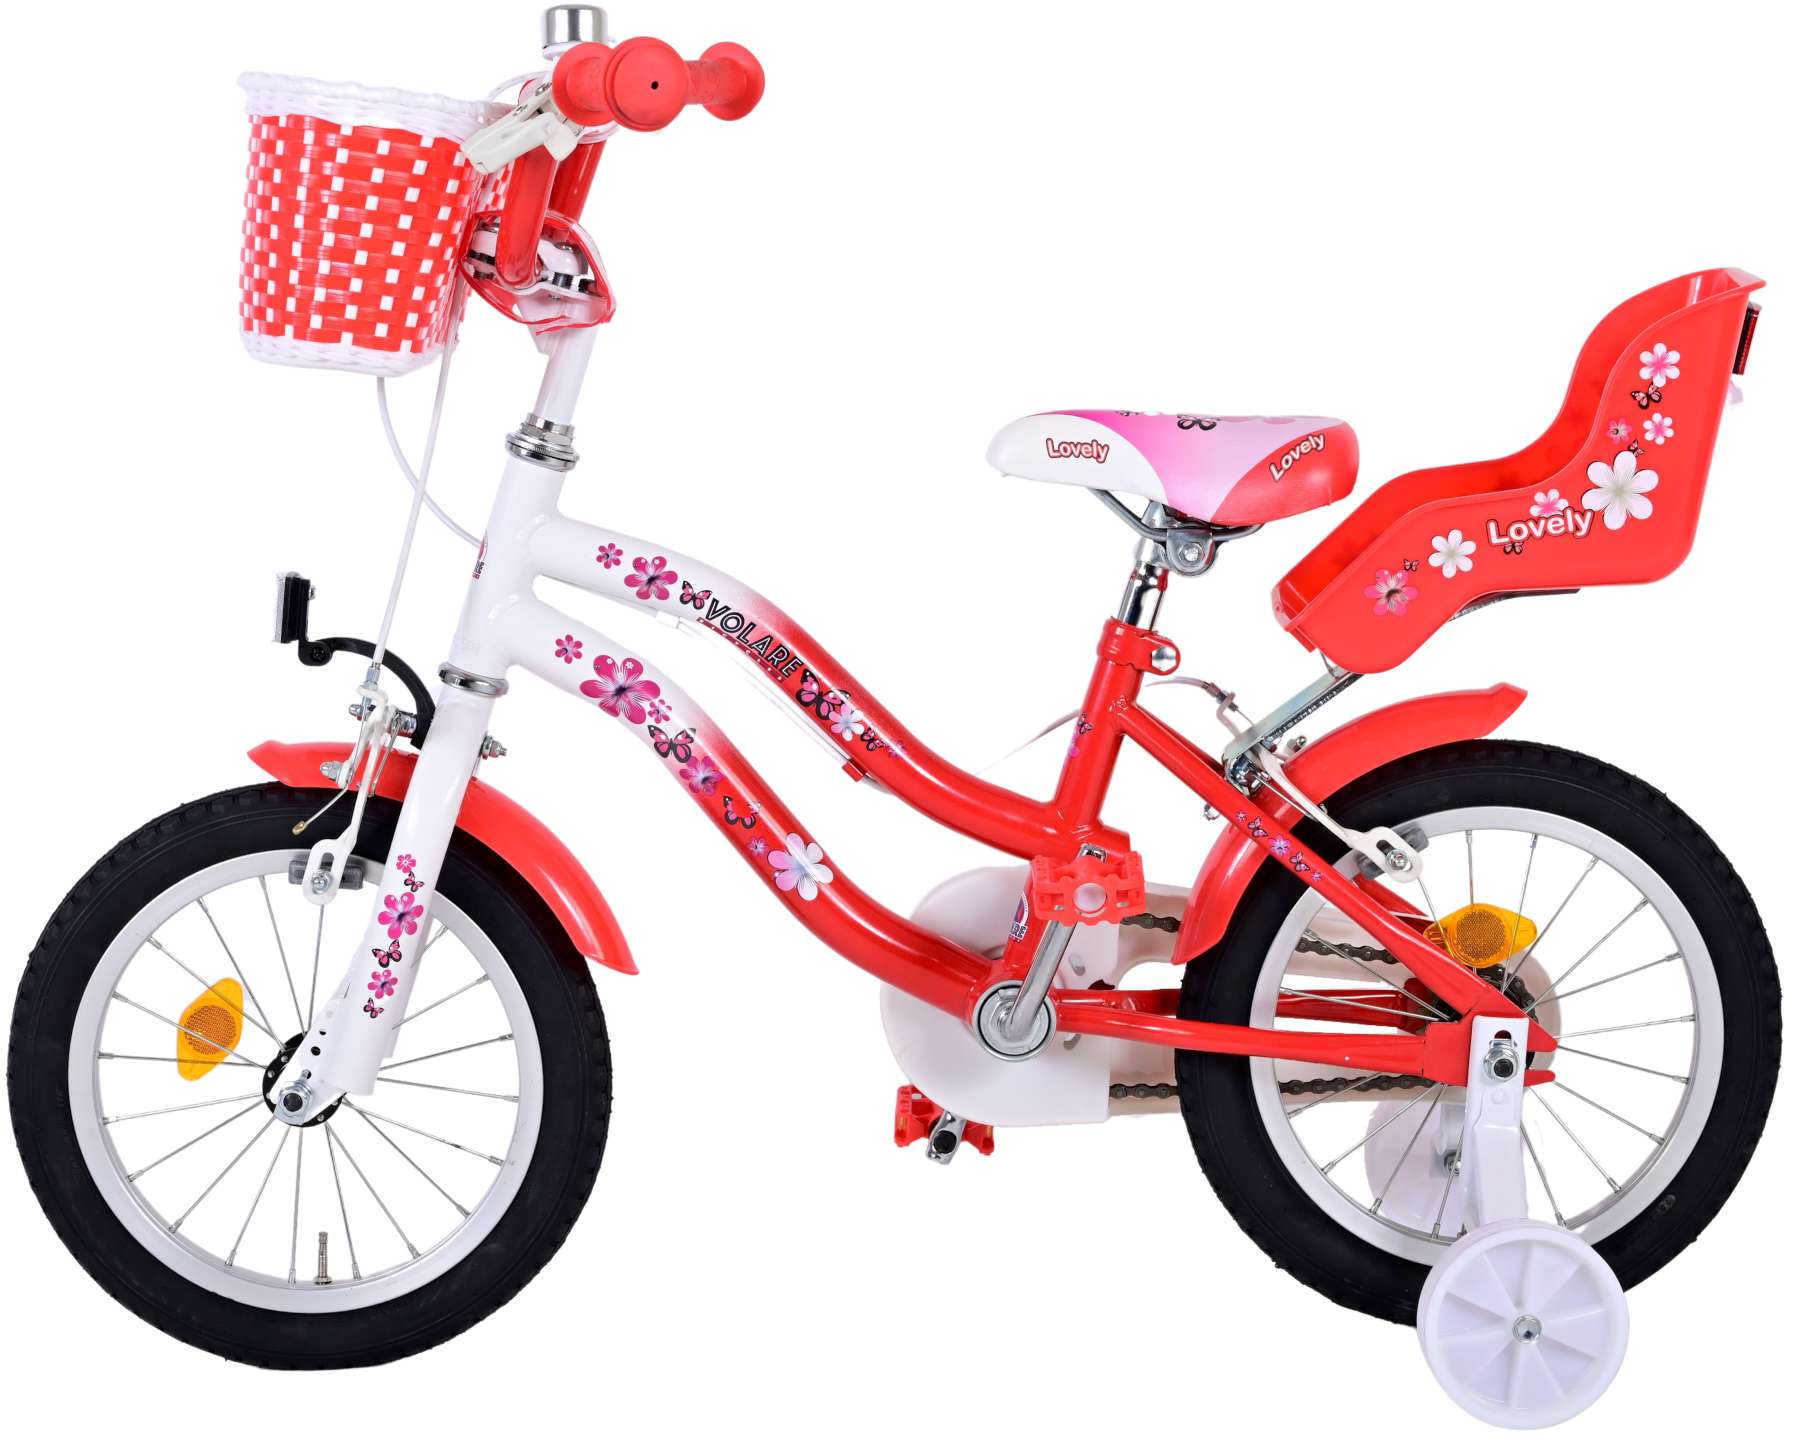 Kinderfahrrad Lovely für Mädchen 14 Zoll Kinderrad Rot Weiß Fahrrad